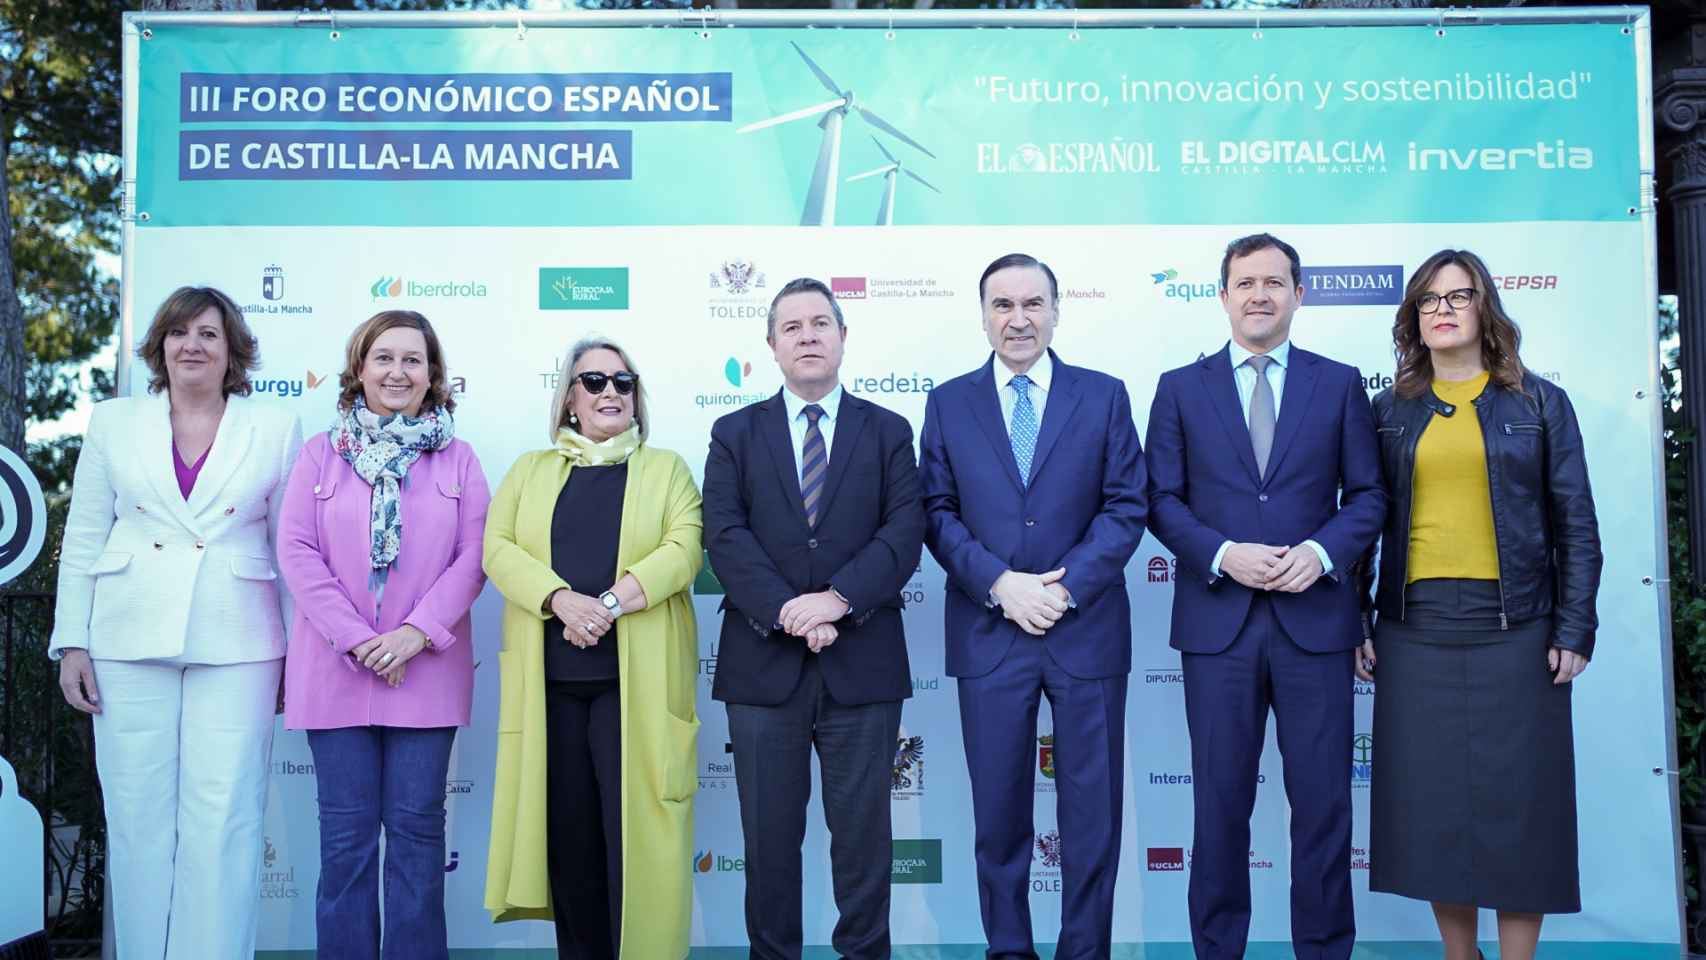 Primera jornada del III Foro Económico Español Castilla-La Mancha ‘Futuro, innovación y sostenibilidad’